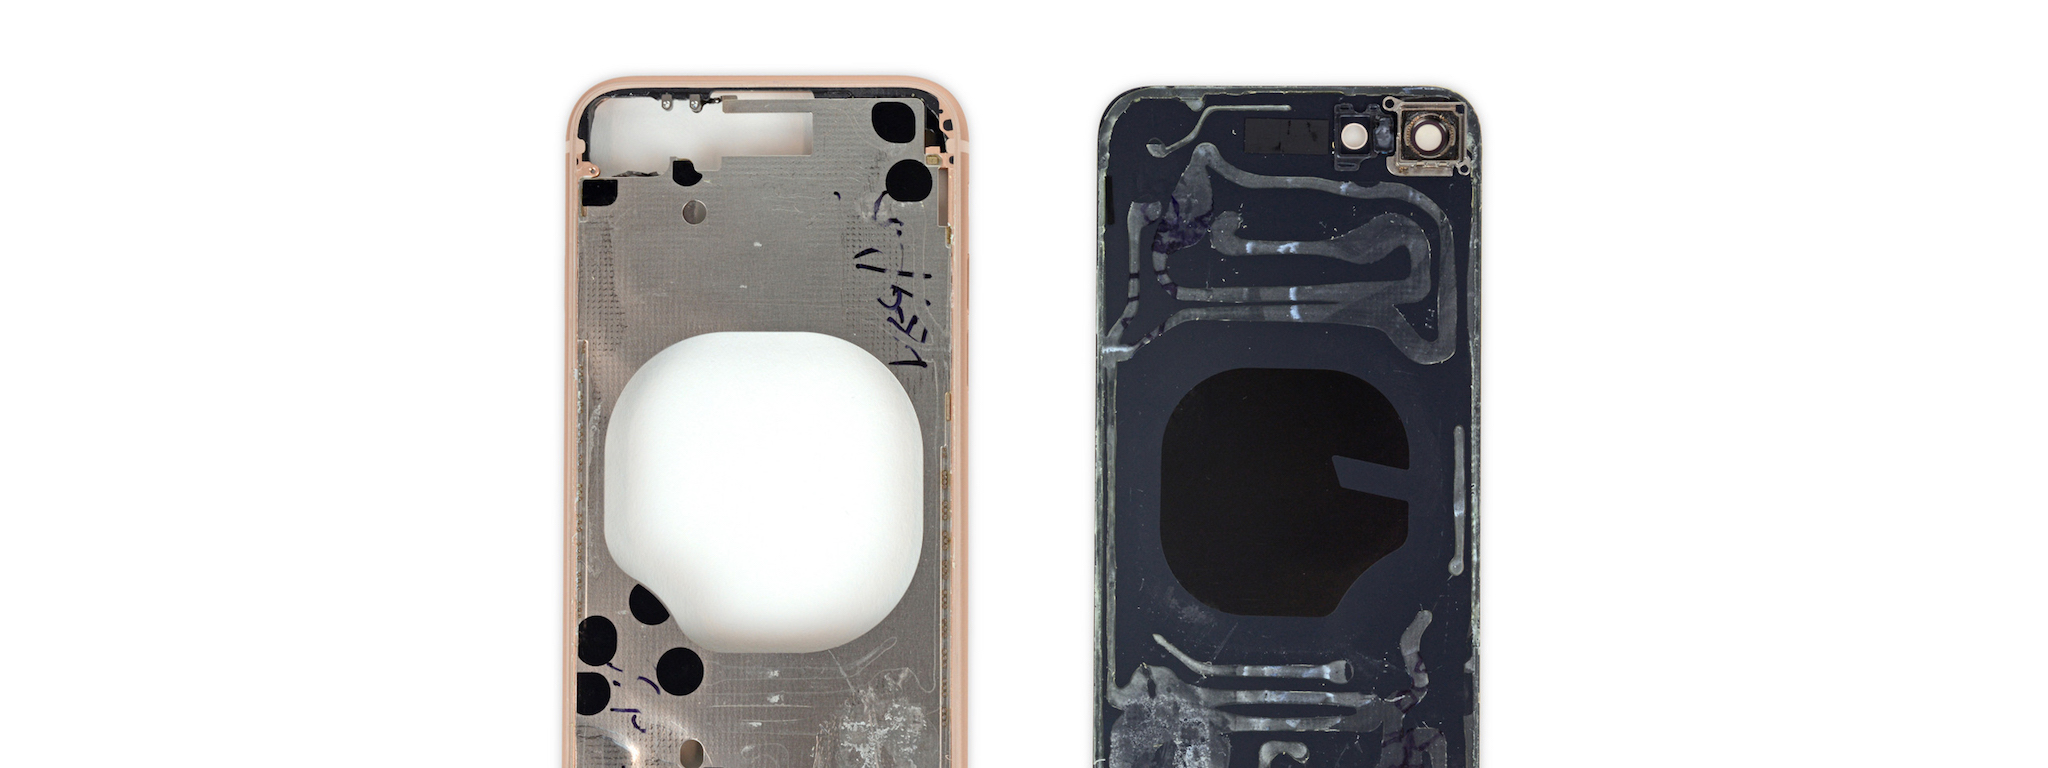 Bên trong iPhone 8: Keo được dùng nhiều hơn, khó sửa chữa hơn iPhone 7, iFixit chấm 6/10